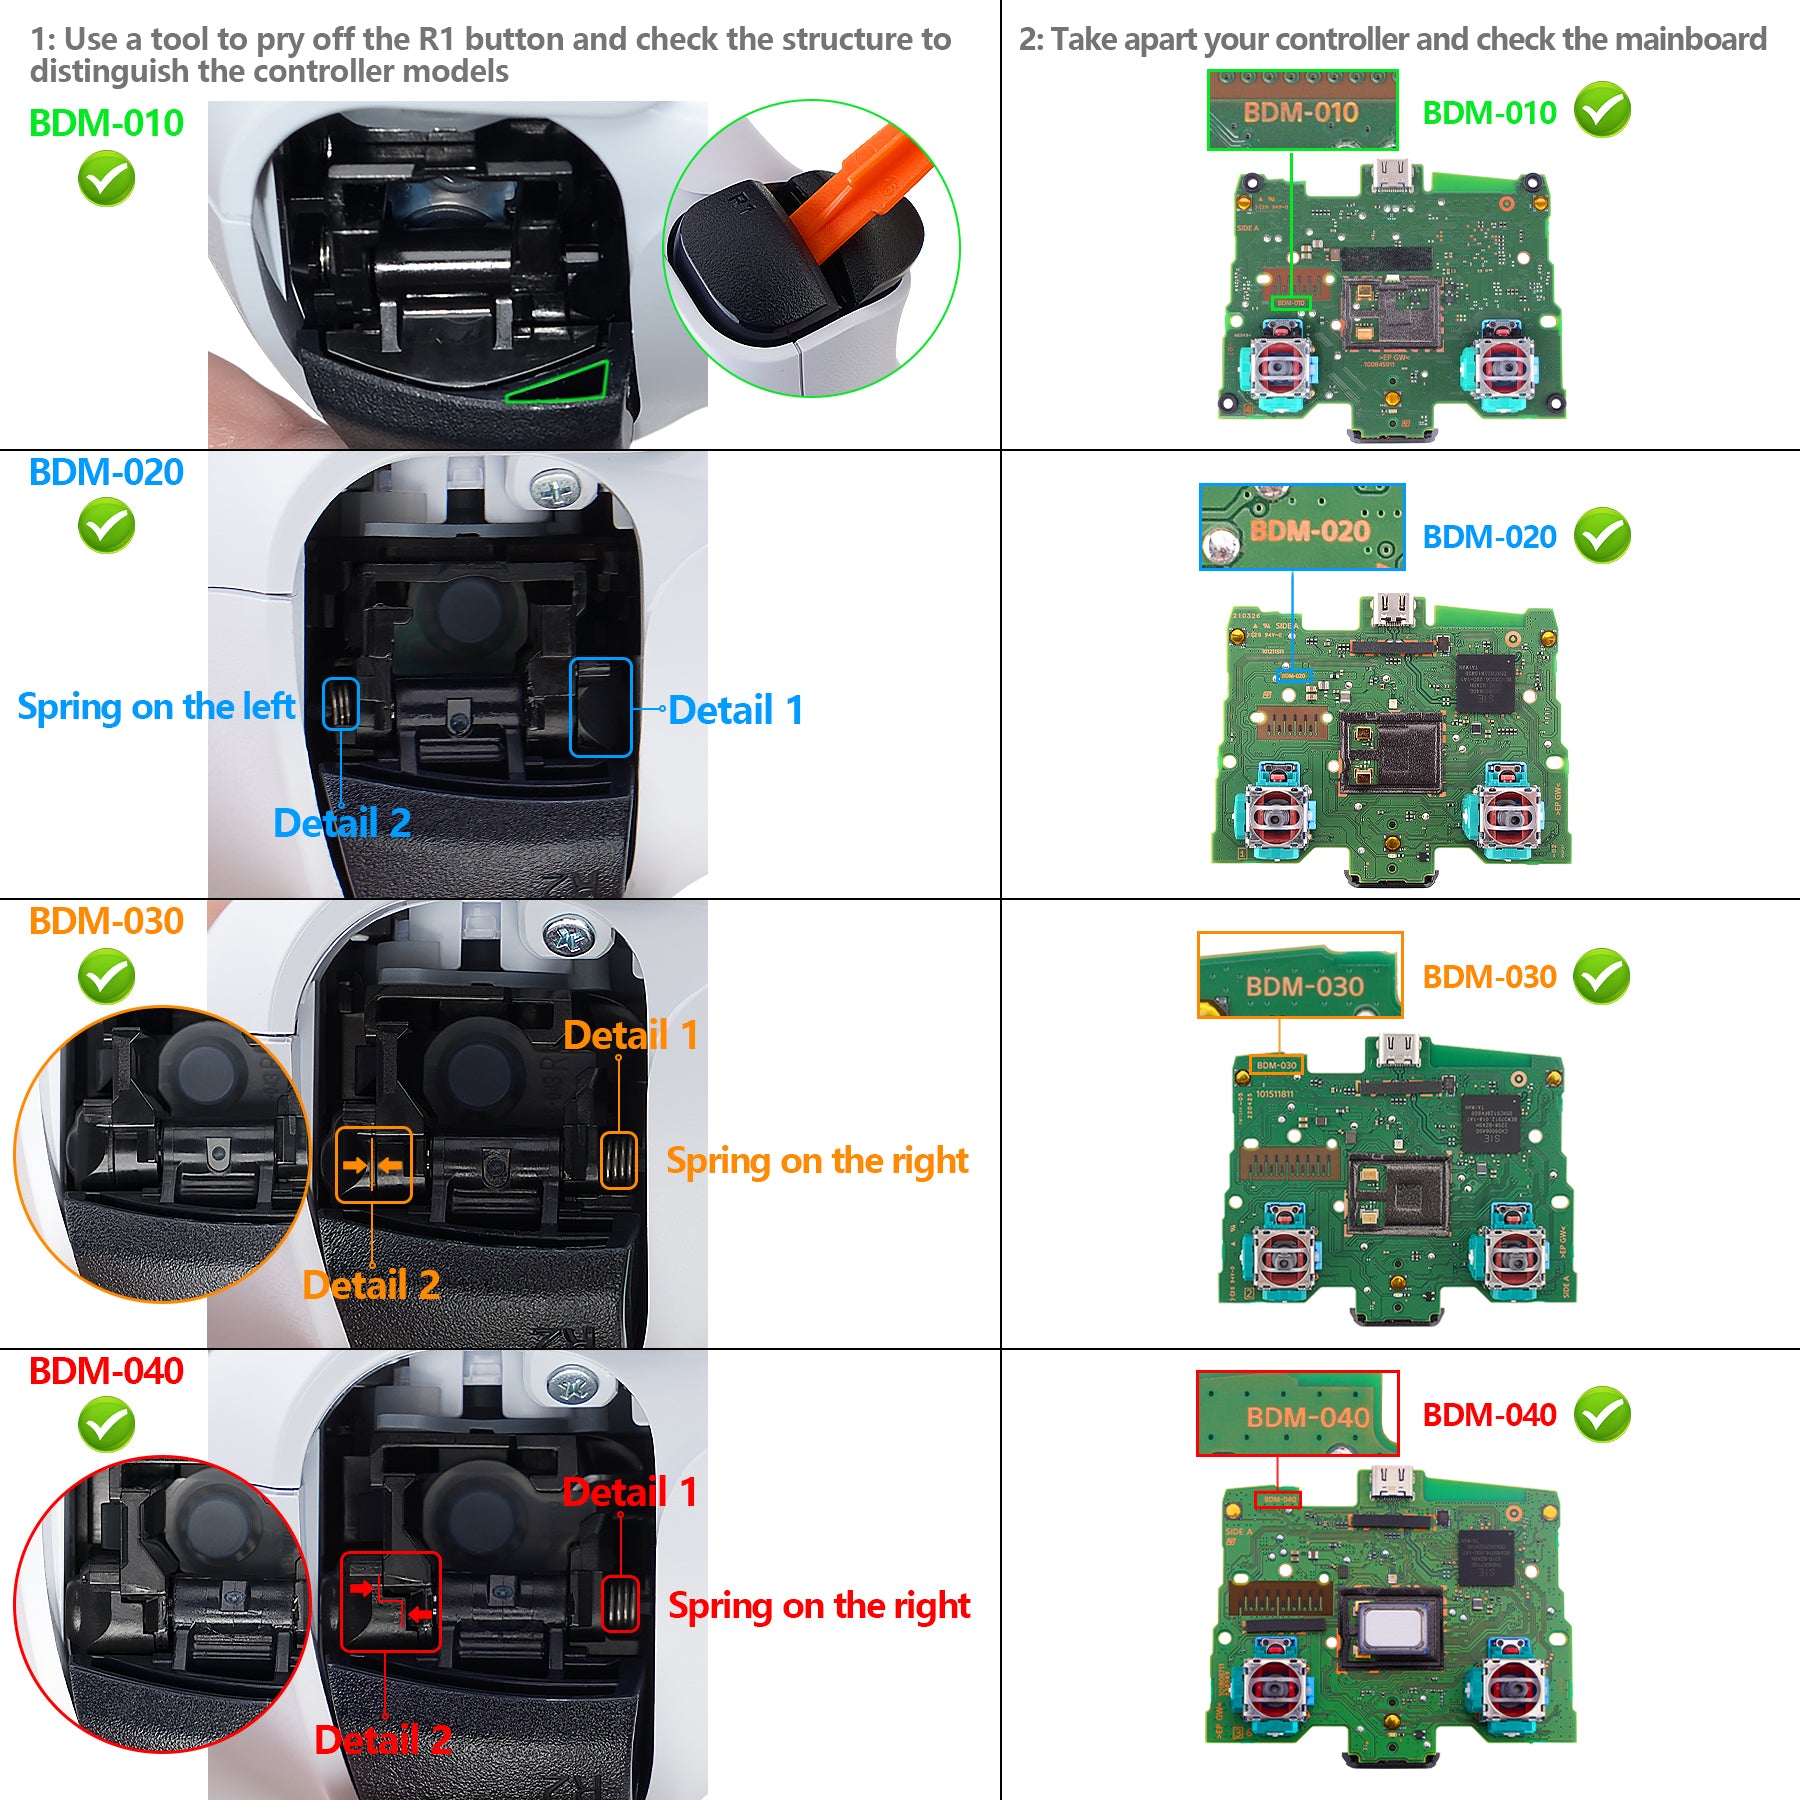 PS5コントローラー用グリーン&ブラックデュアルカラー交換用サムスティック、PS5と互換性のあるカスタムアナログスティックジョイスティック、PS4全モデルコントローラー用  - JPF636